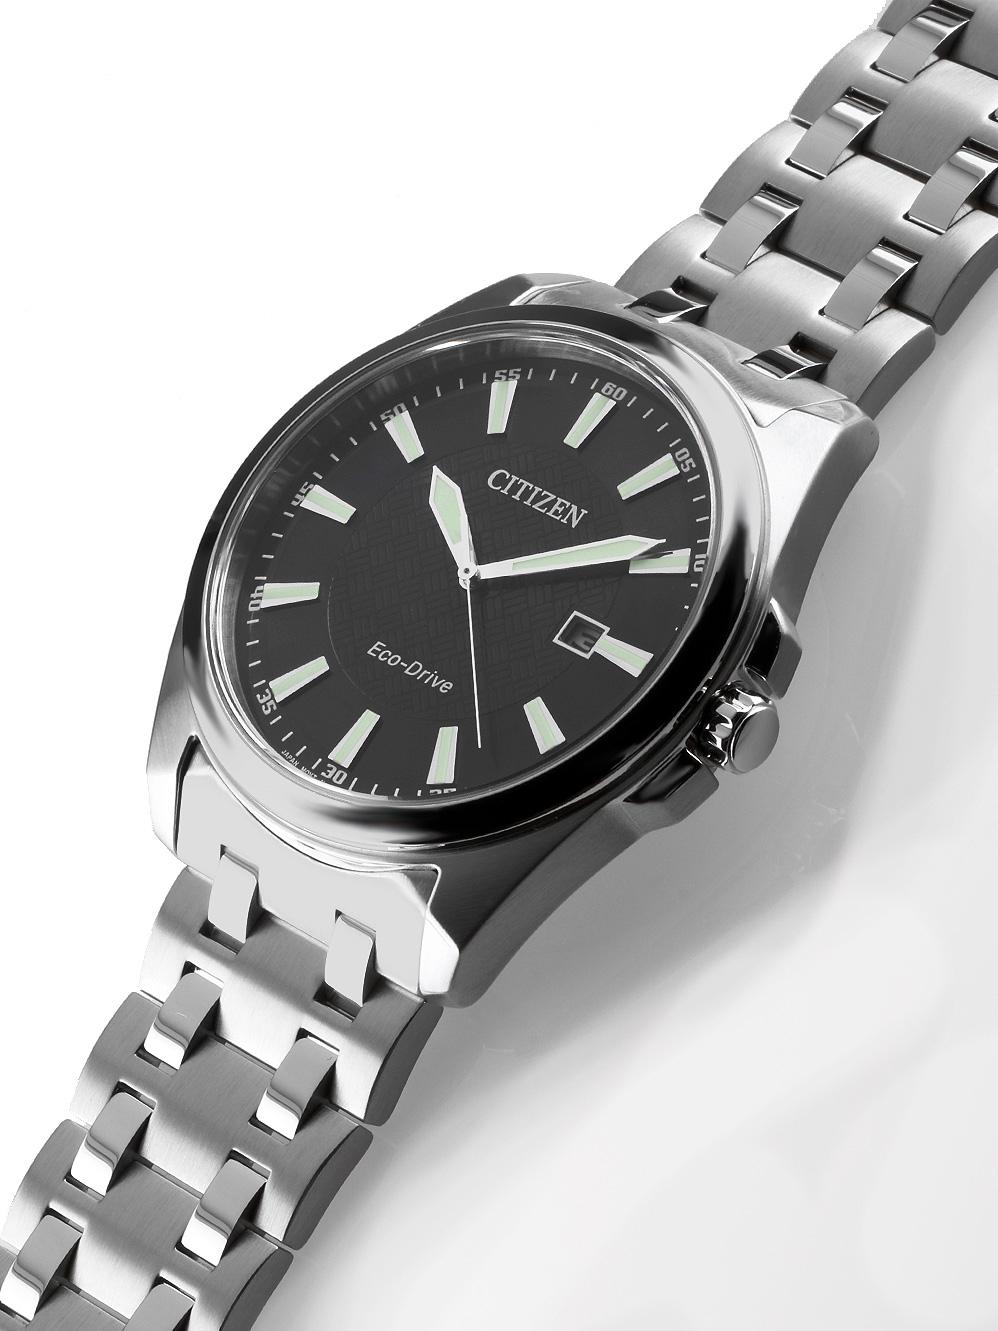 BM7108-81E | TEMPUS в Оригинал купить наручные Drive Eco — Citizen часы